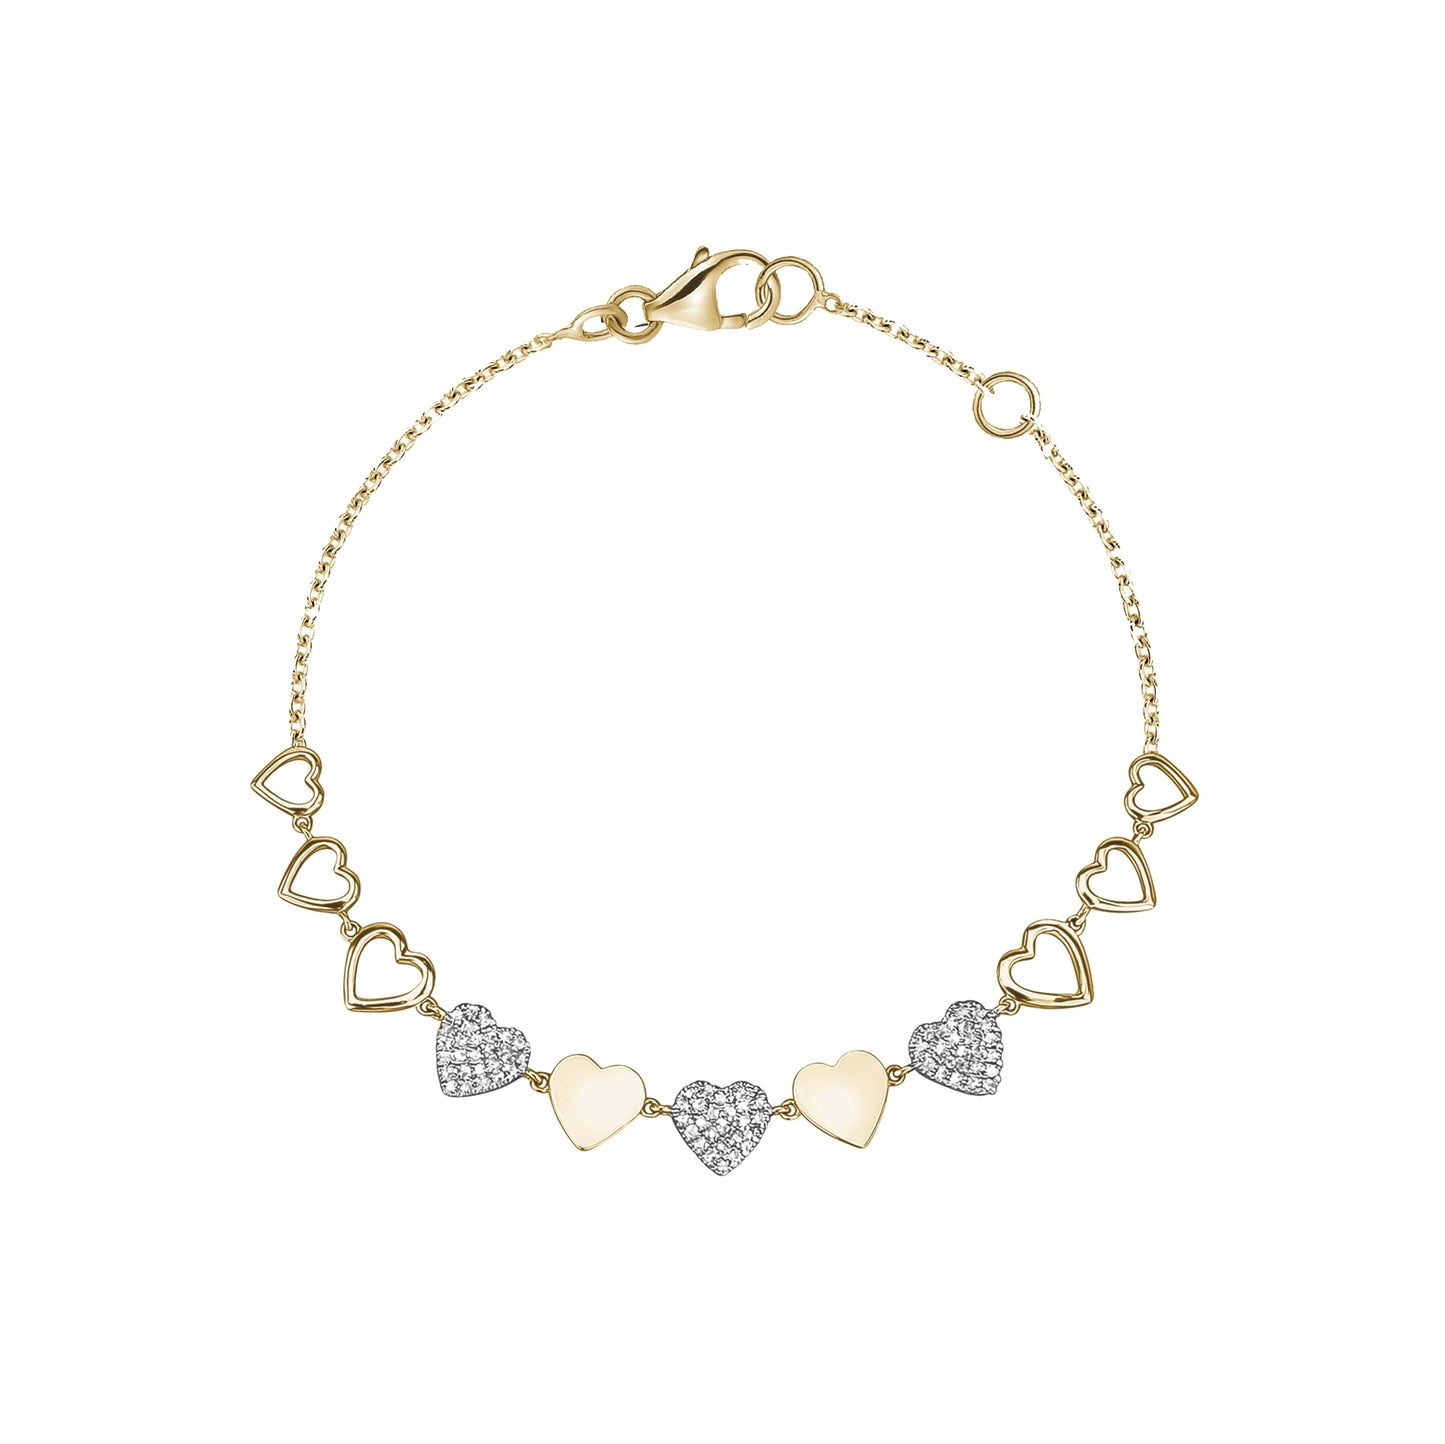 Alternating Gold & Pave Diamond Heart Bracelet